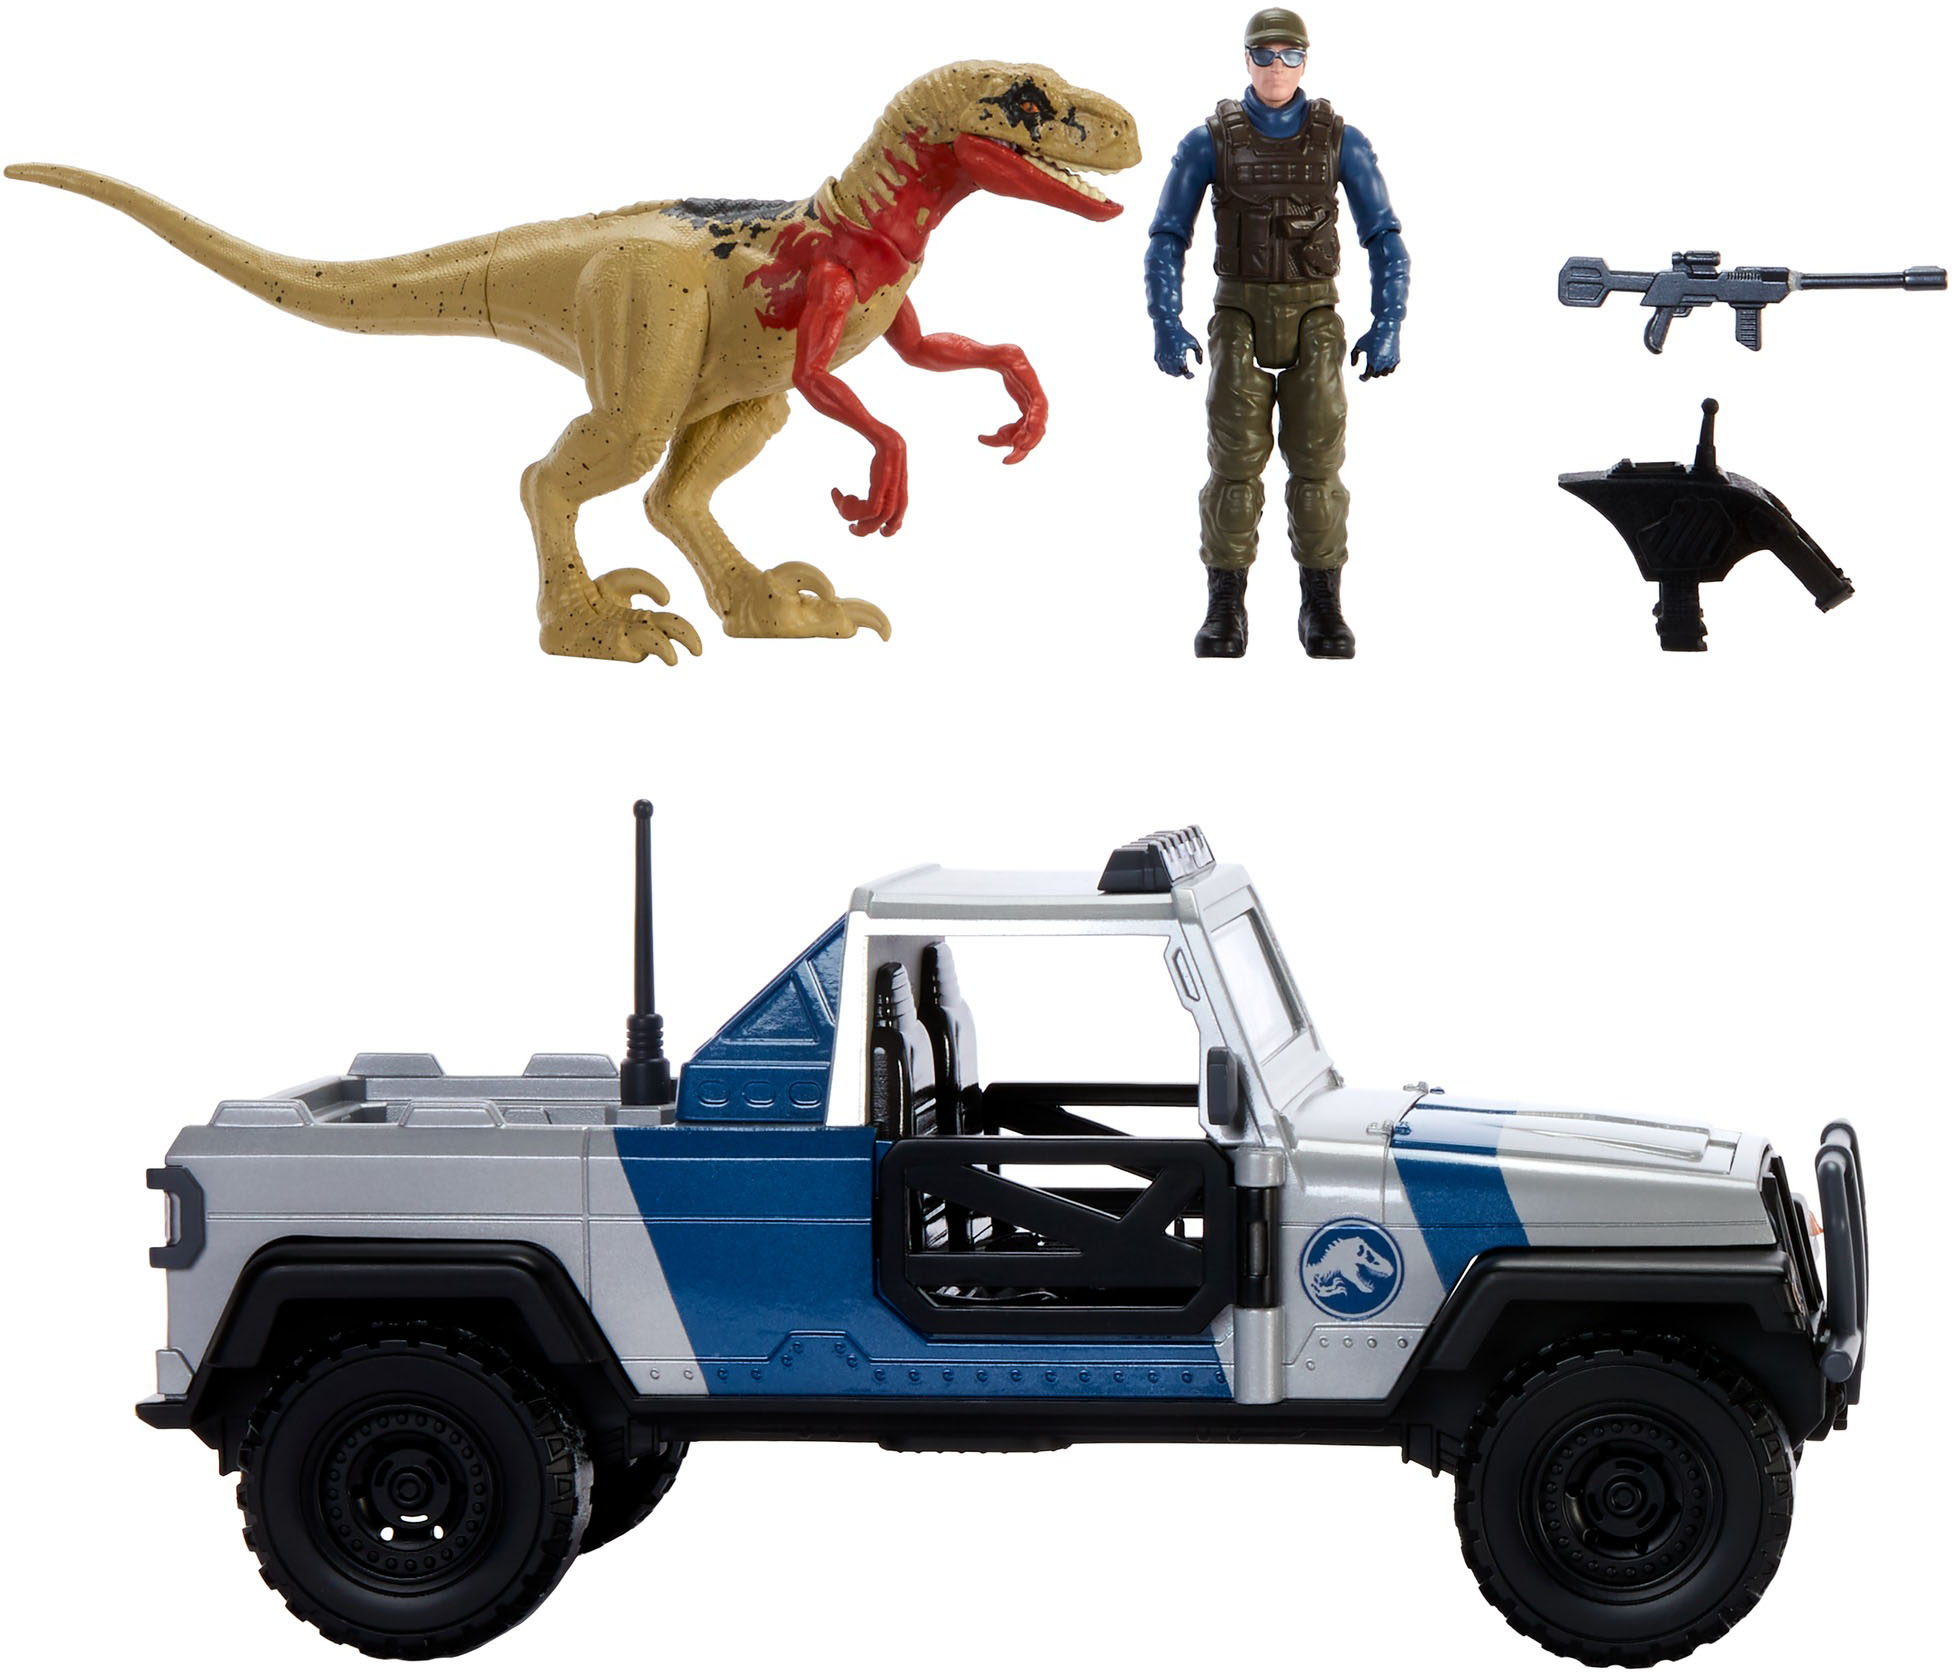 Mô hình đồ chơi khủng long Mattel Jurassic World Search 'N Smash Truck Set with Atrociraptor Dinosaur & Human Action